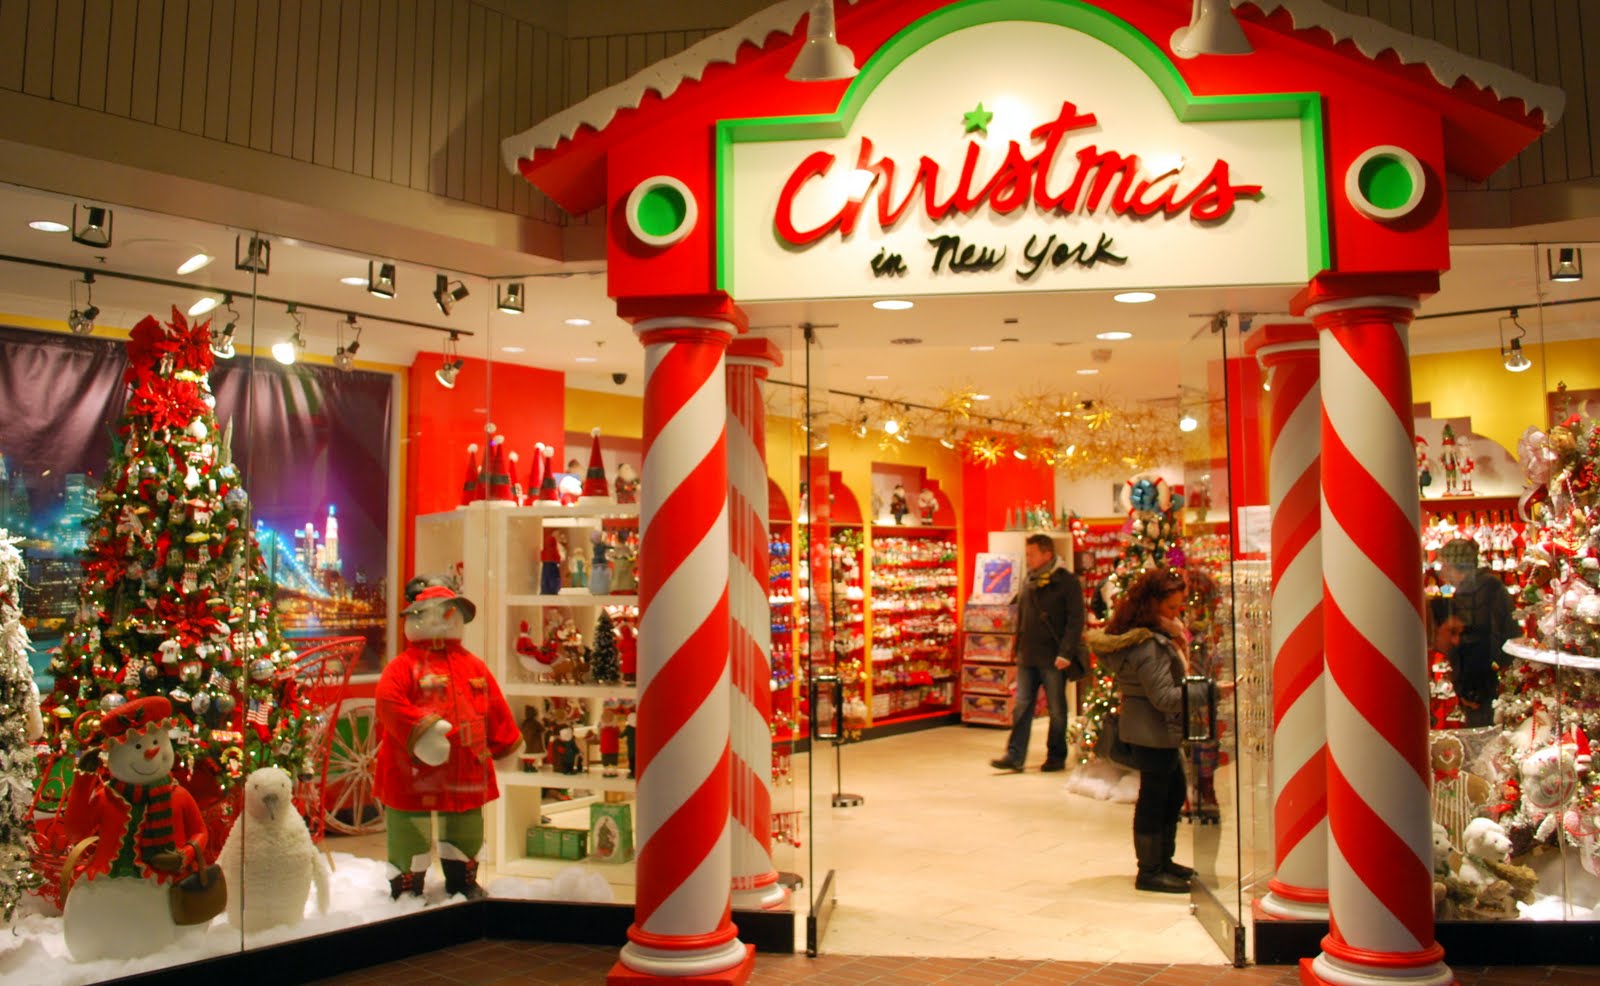 Mille Fiori Favoriti Christmas in NY Ornament Shop